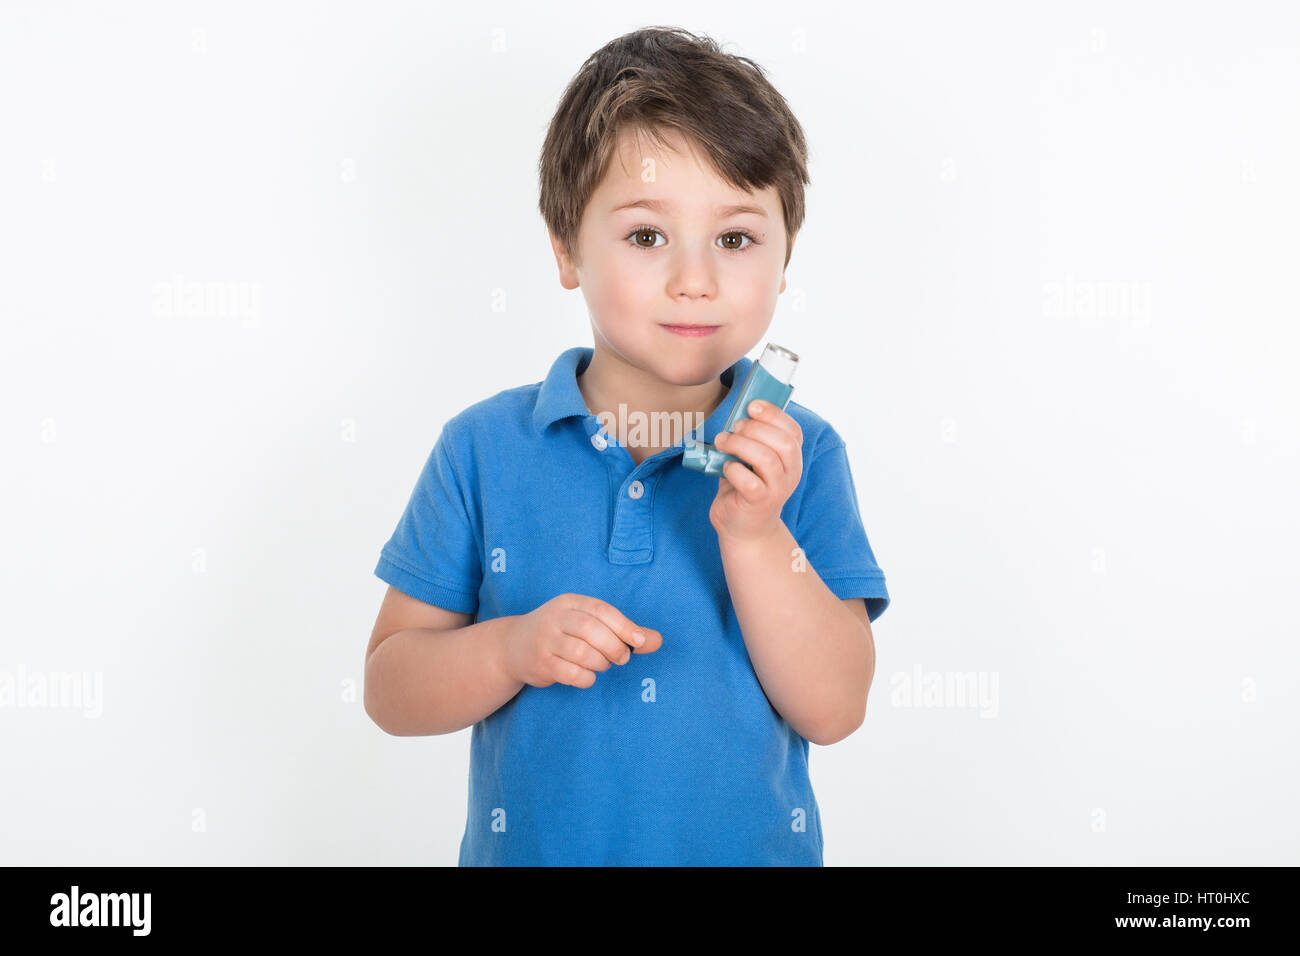 Kleiner Junge mit Asthma hält einen dosiert-Dose-Inhalator "Puffer". Isoliert auf weißem Hintergrund. Stockfoto